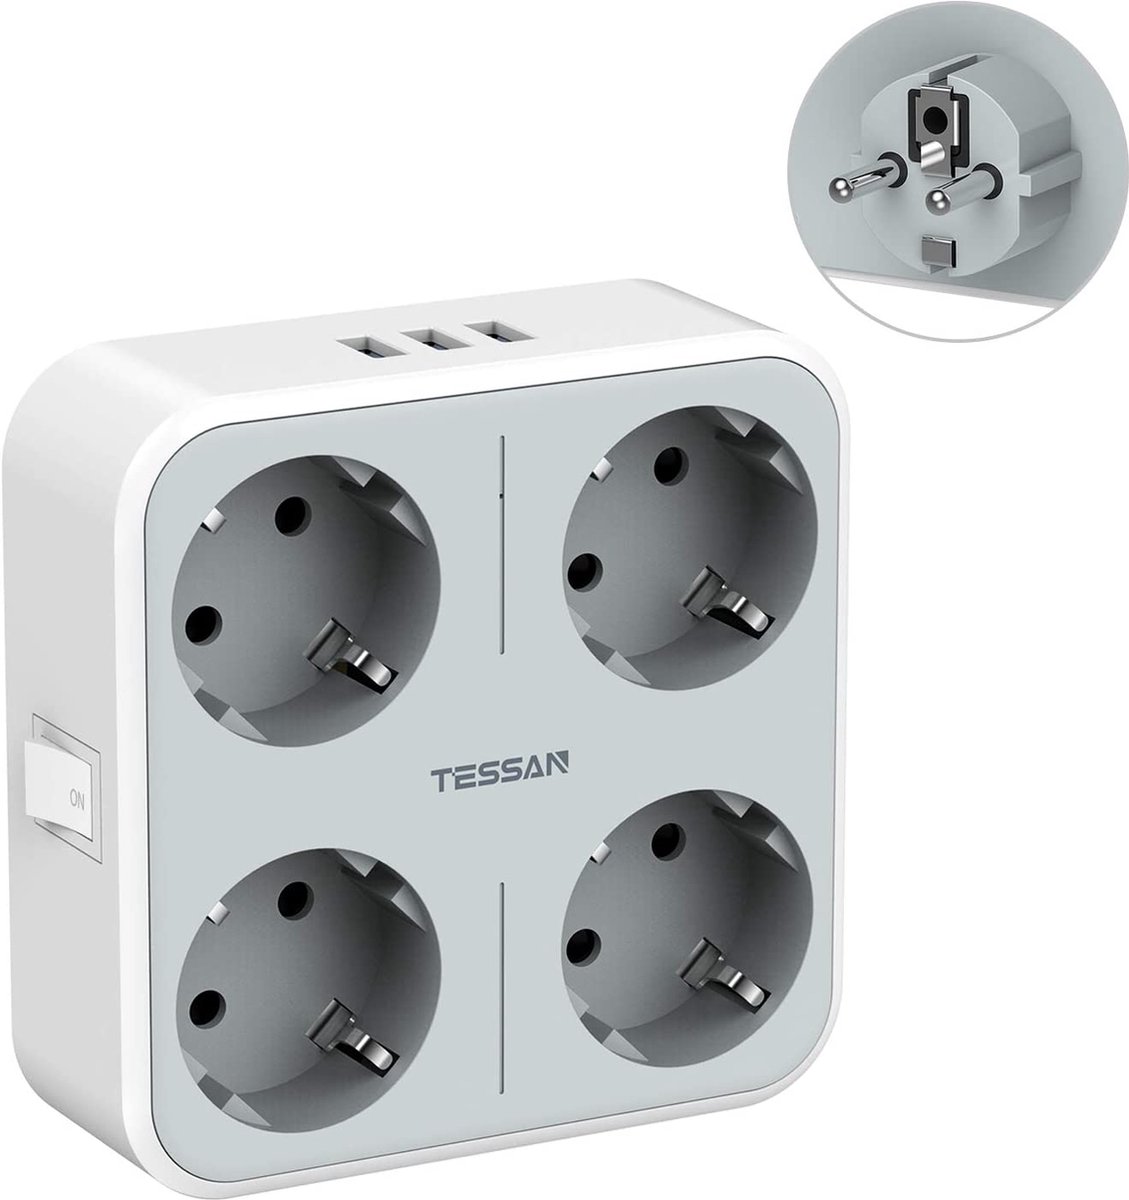 Prises, multiprises et accessoires électriques Tessan 6 en 1 Prise